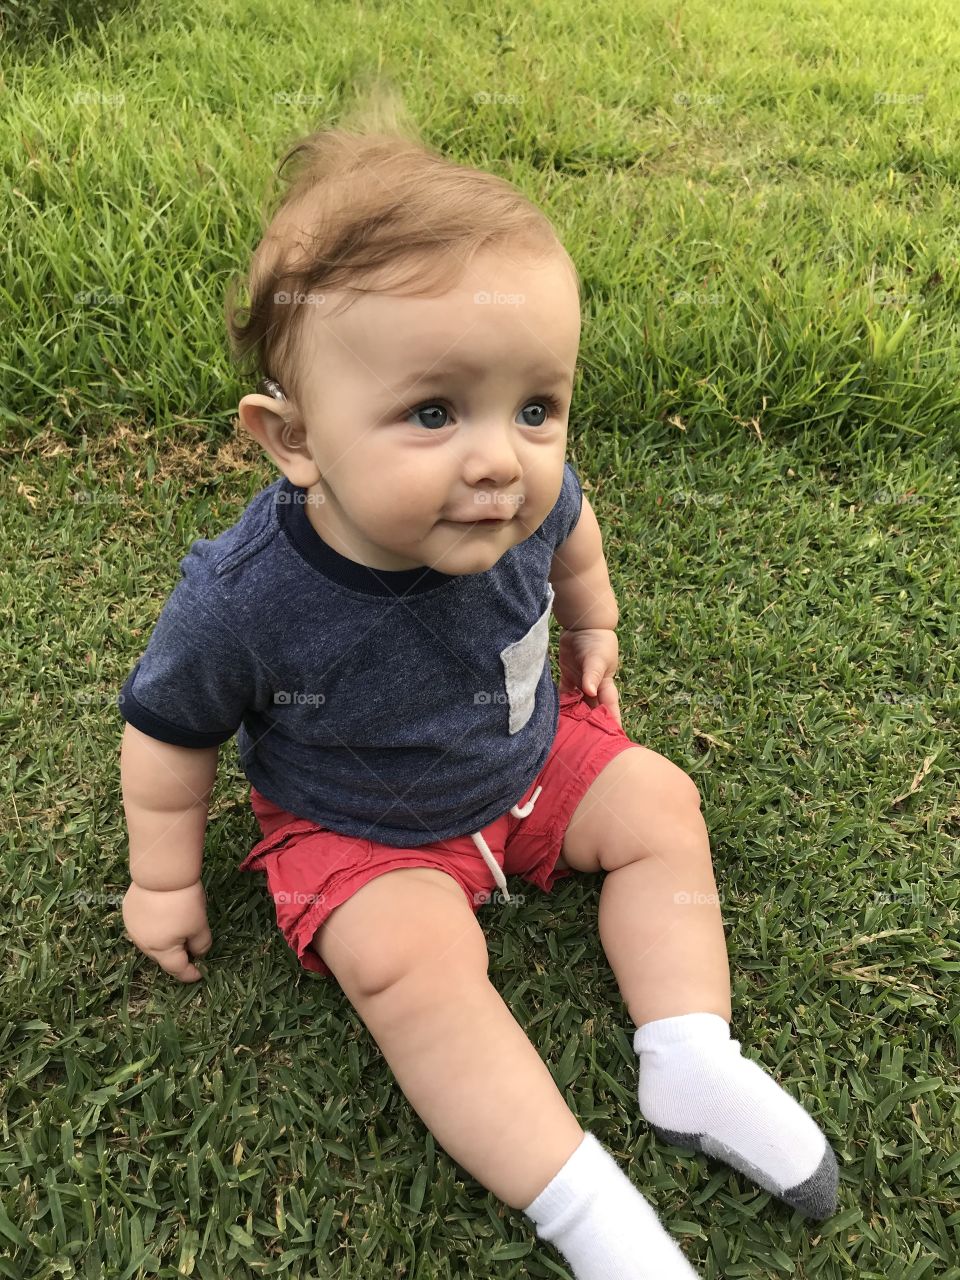 Child, Grass, Little, Cute, Baby